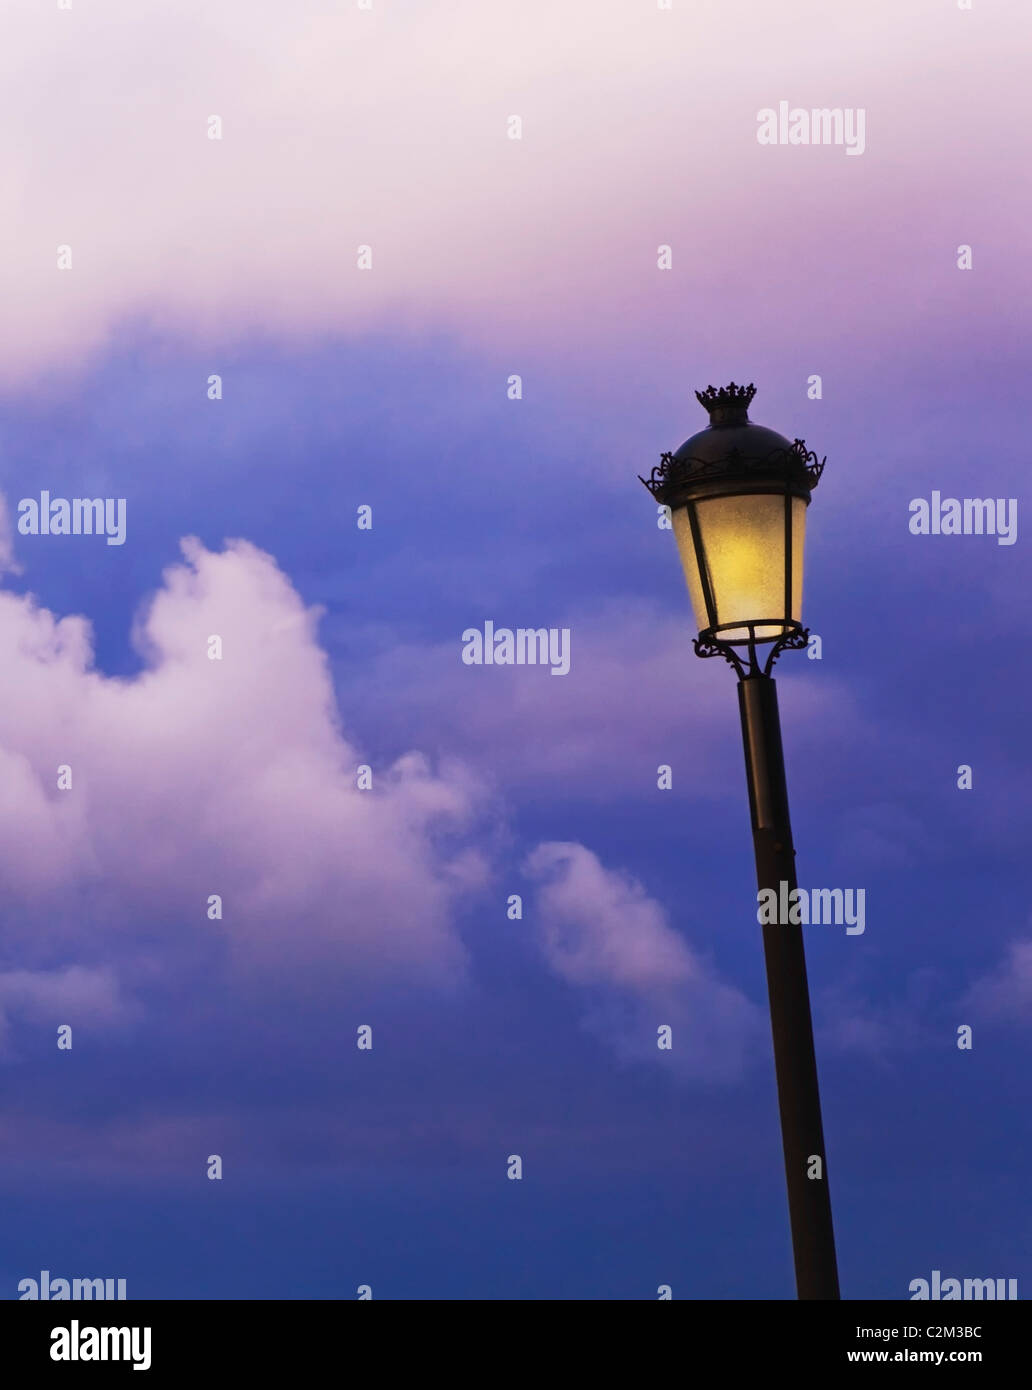 Un lampadaire contre un ciel nuageux Banque D'Images